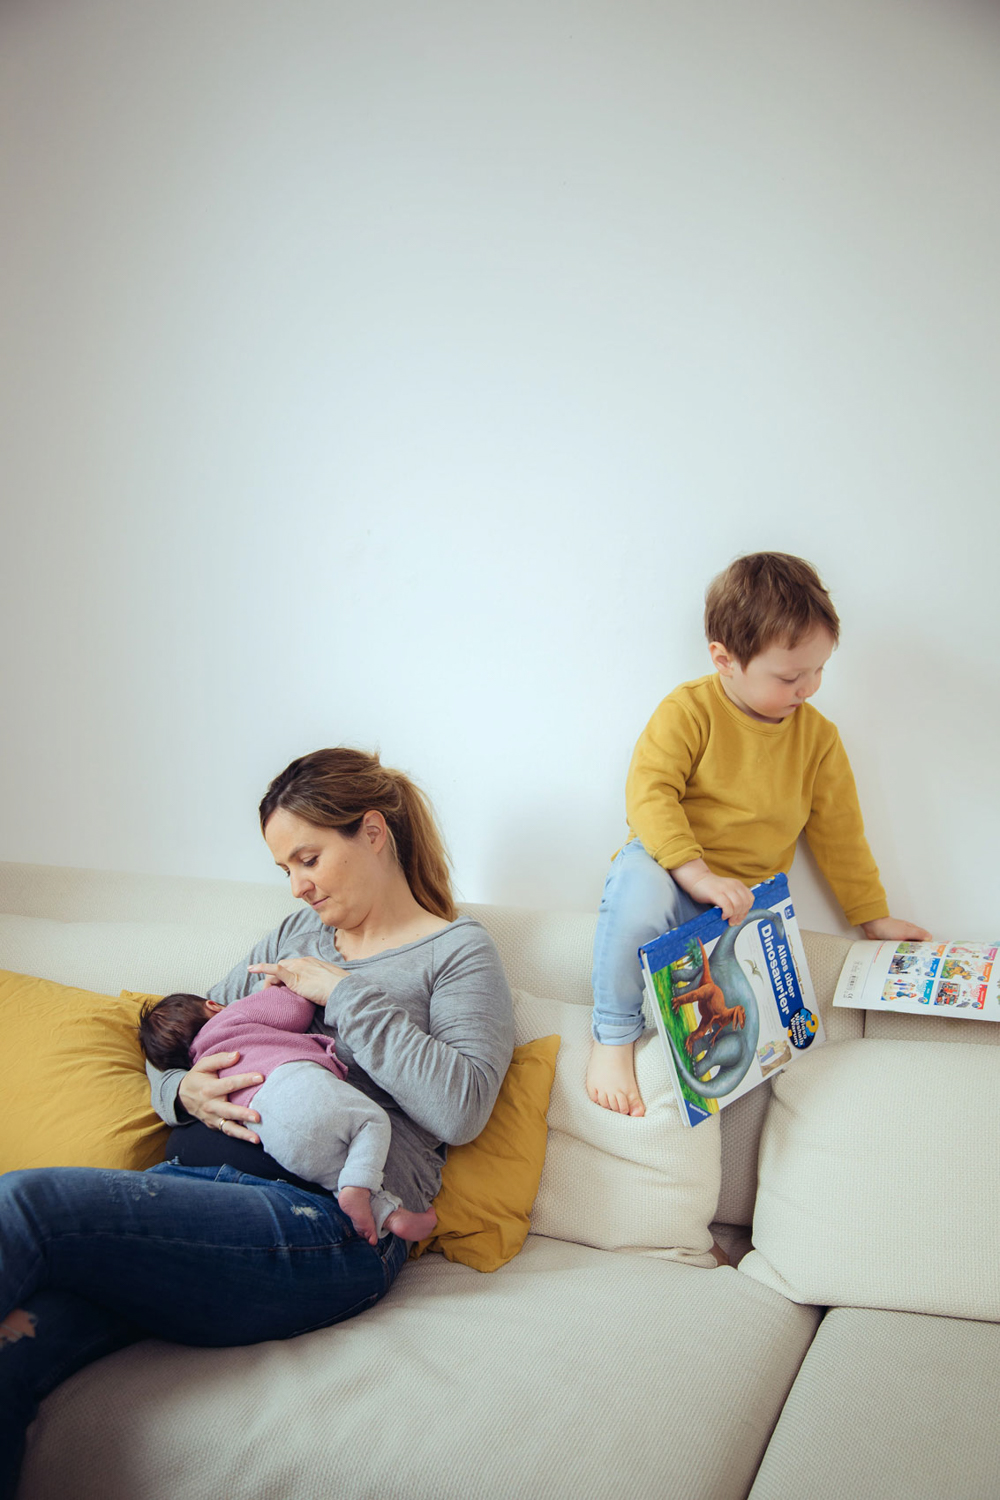 Mutter stillt Baby auf Couch, großer Sohn klettert mit Büchern auf Rückenlehne